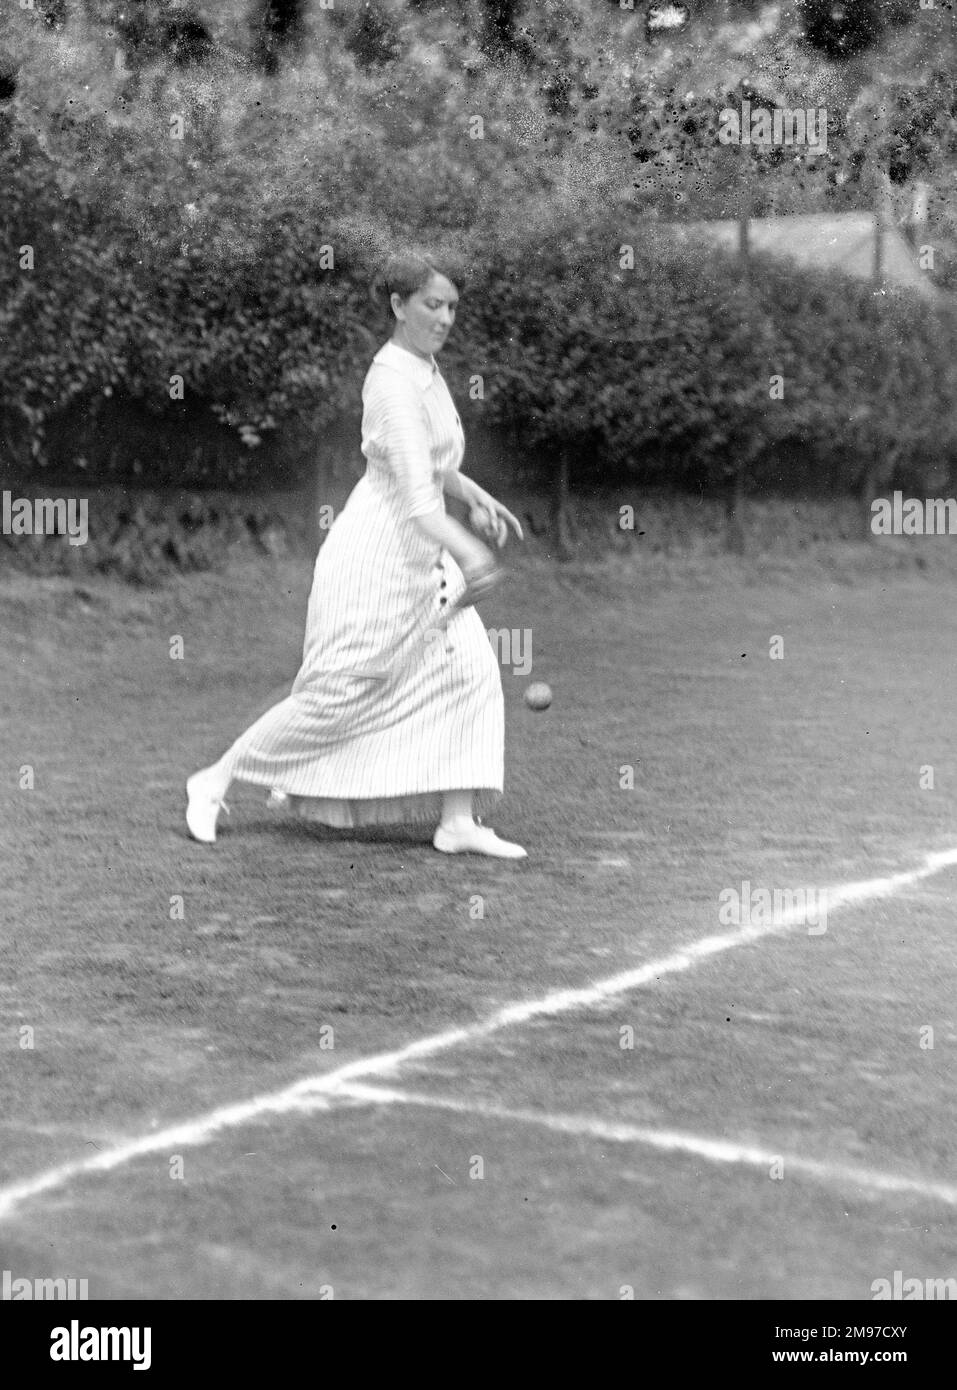 Torneo de tenis Moorfield, Stockport 1913 Foto de stock